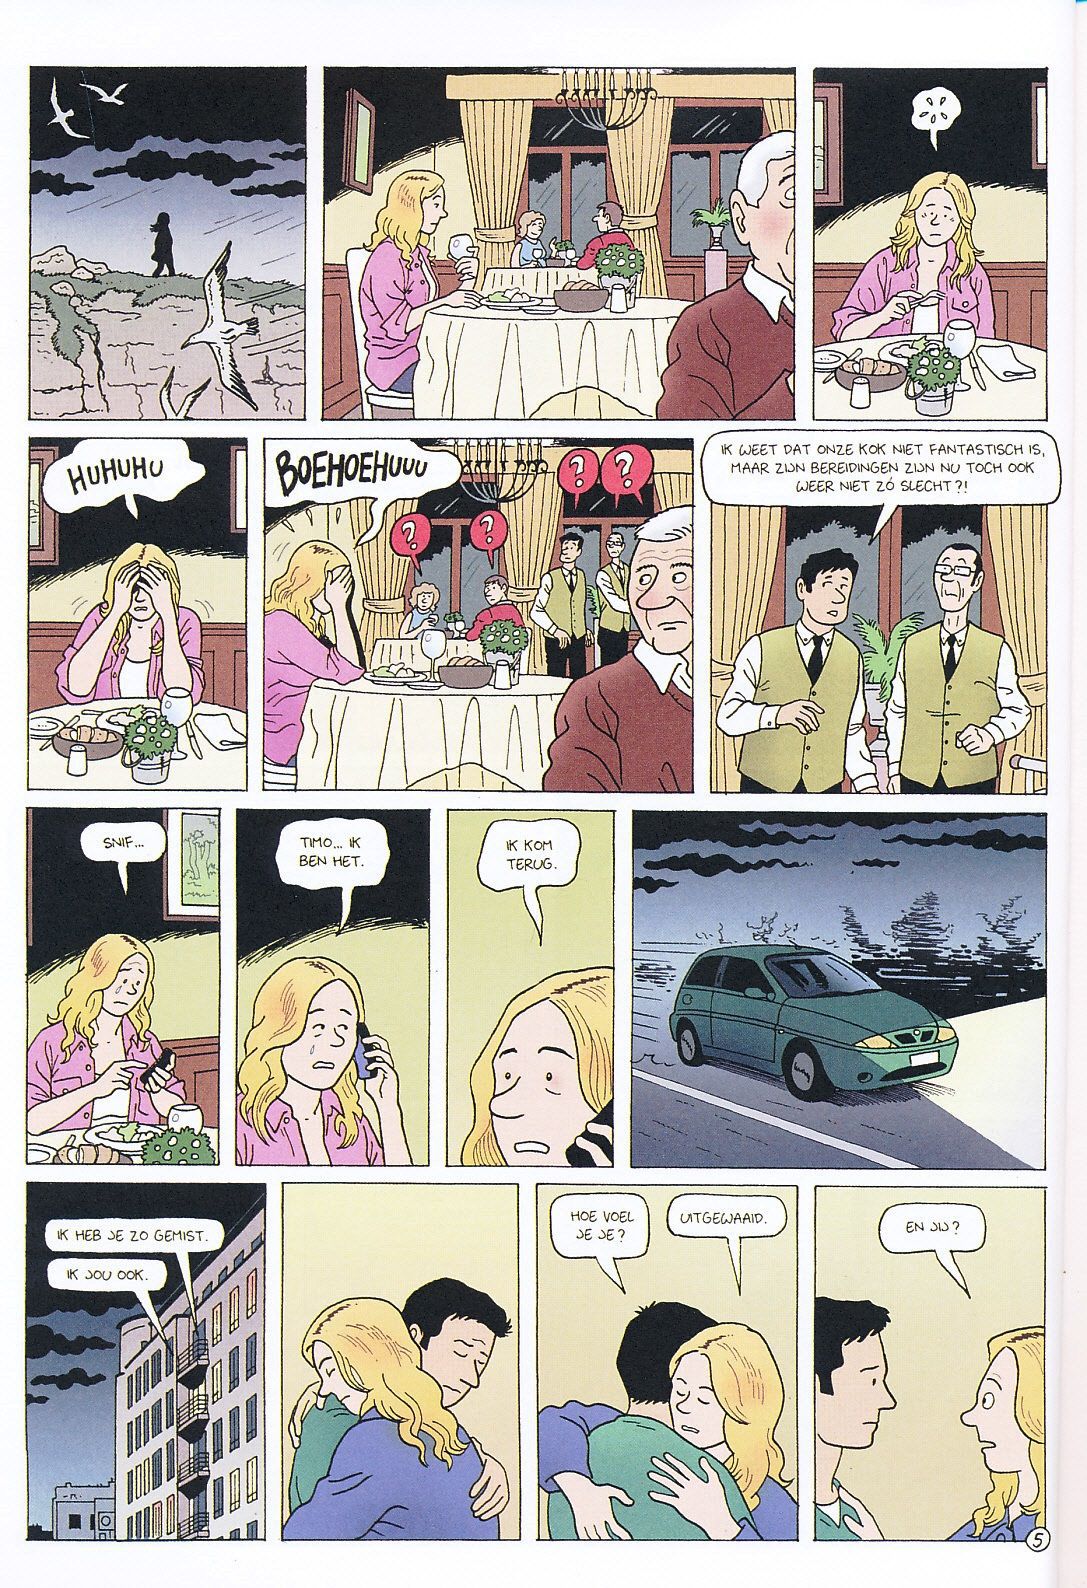 Positief (Dutch) Een wat serieuzer stripverhaal van Tom Bouden 7